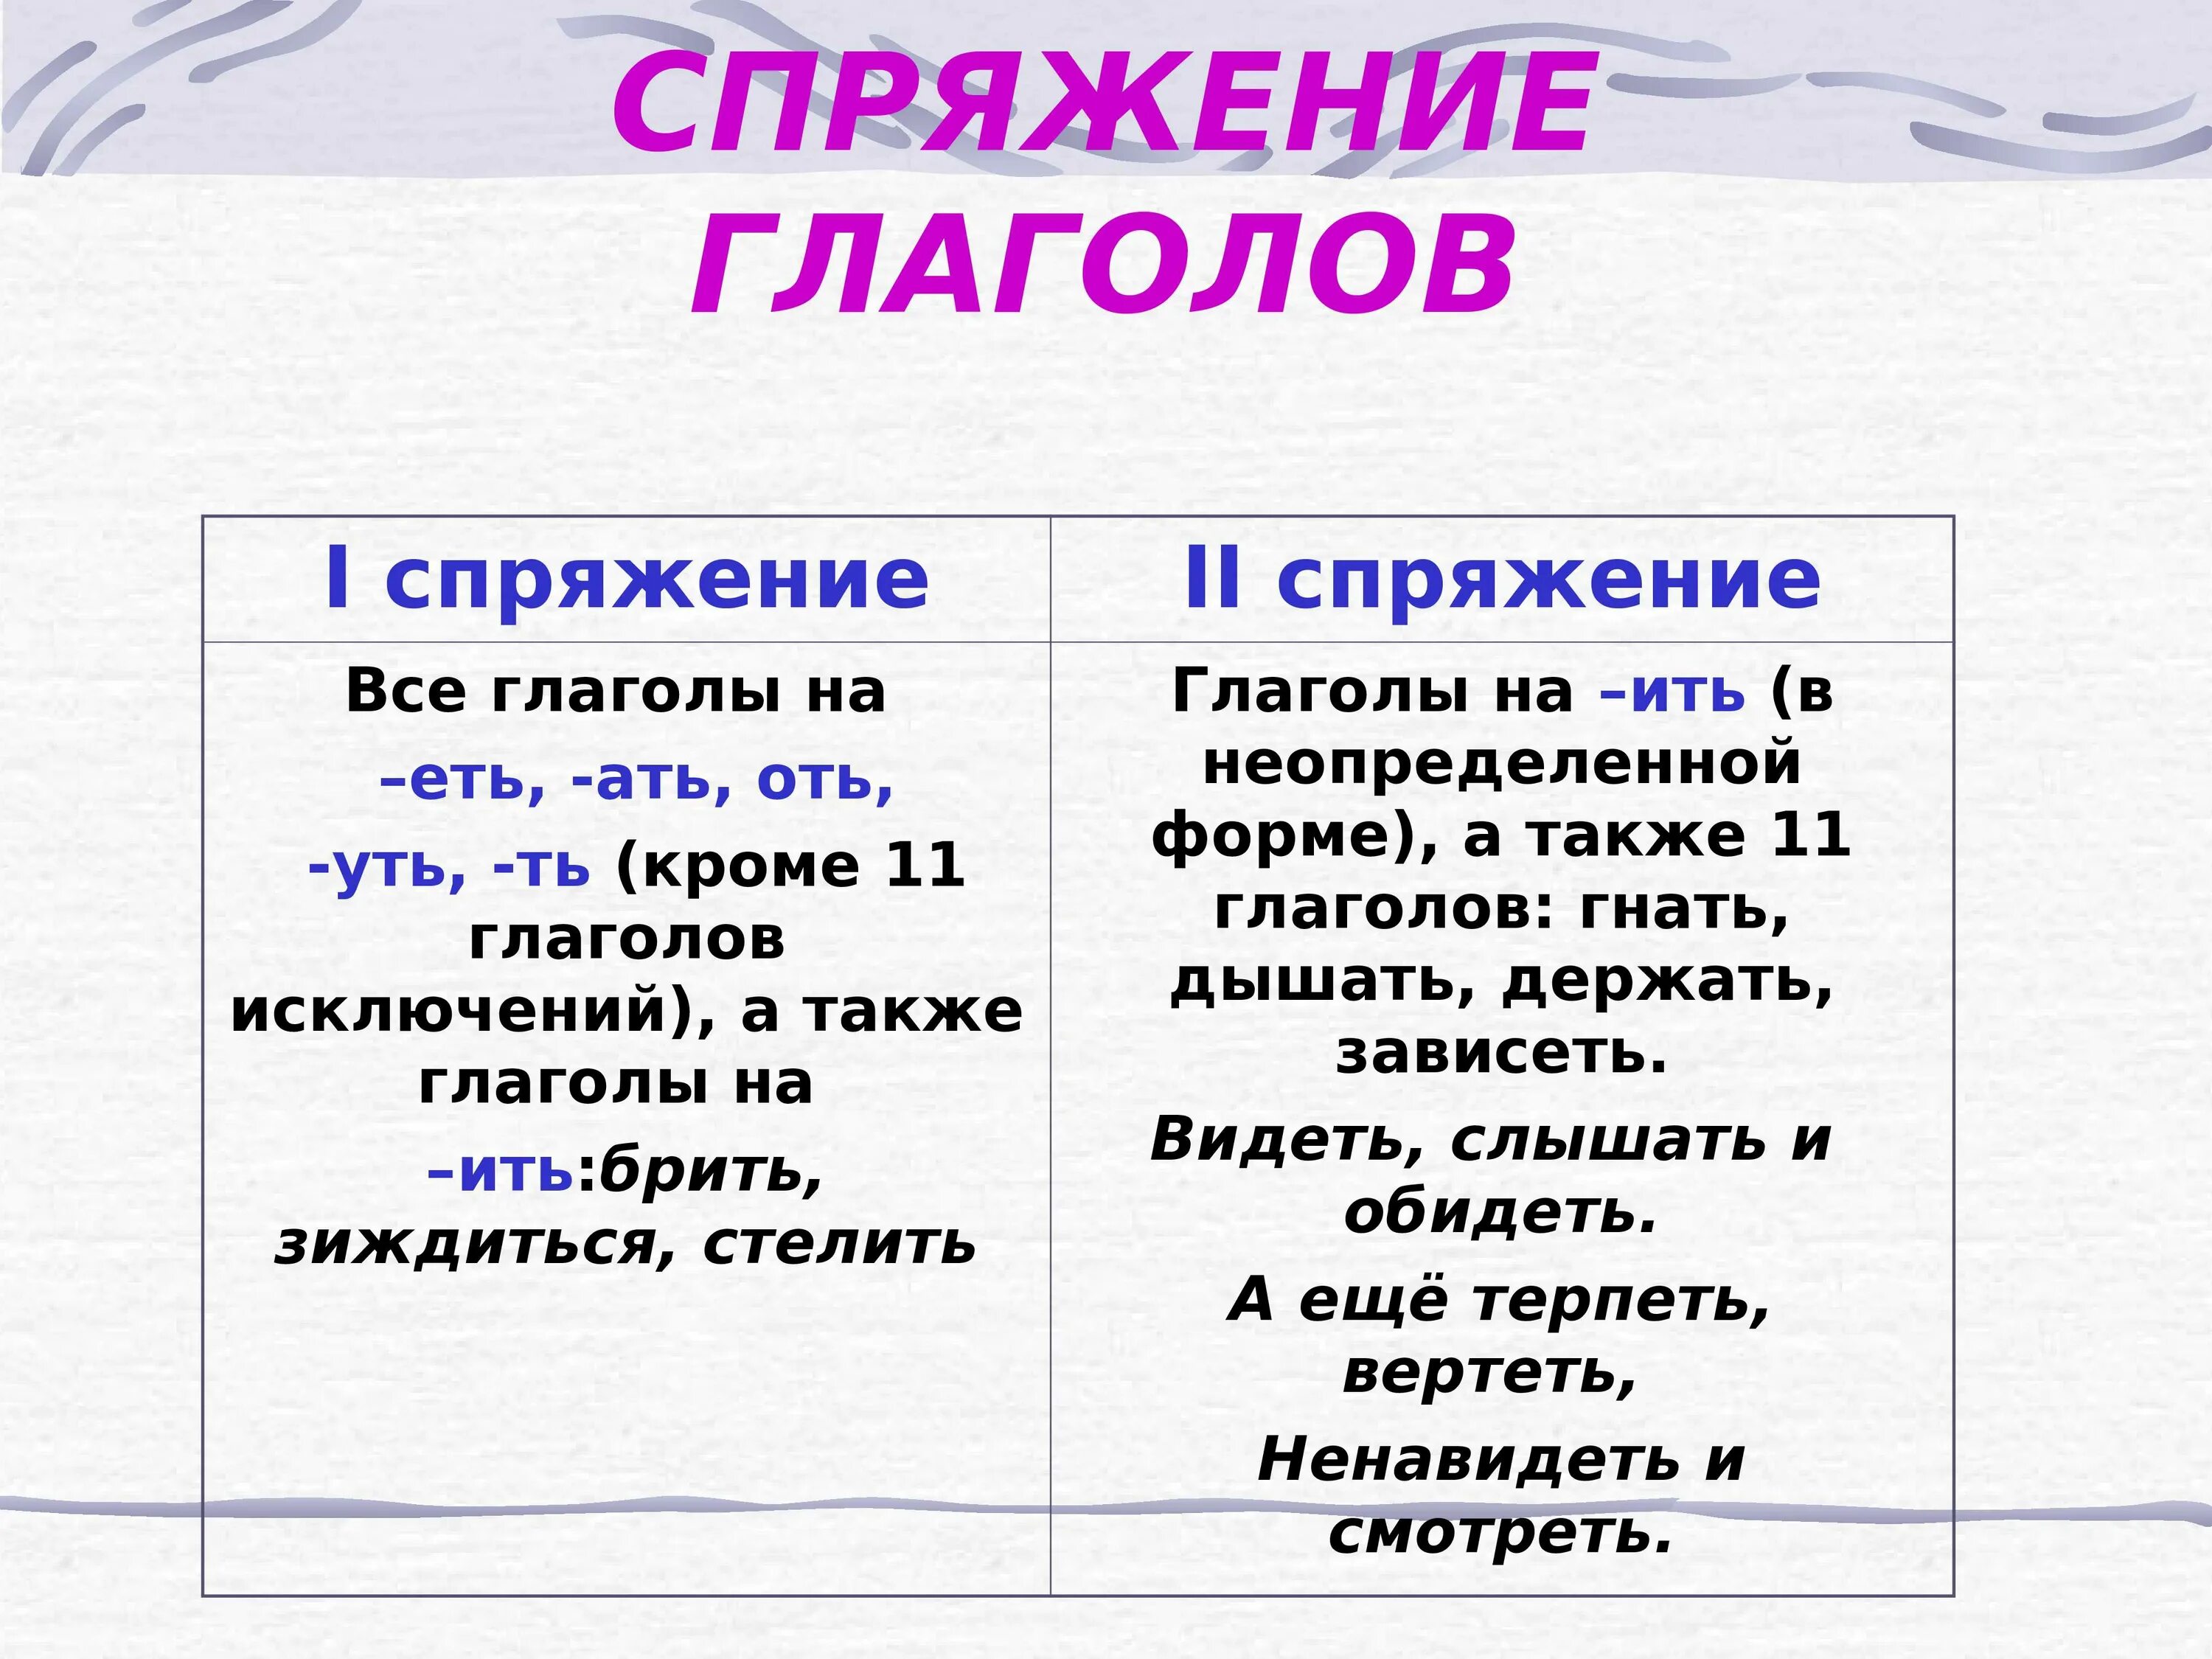 Определение спряжения глаголов с ответами. Как понять спряжение глаголов в русском языке 4 класс таблица. Как понять спряжение глаголов 6 класс. Спряжение глаголов правило таблица. Как понять спряжение глаголов в русском языке 4 класс.